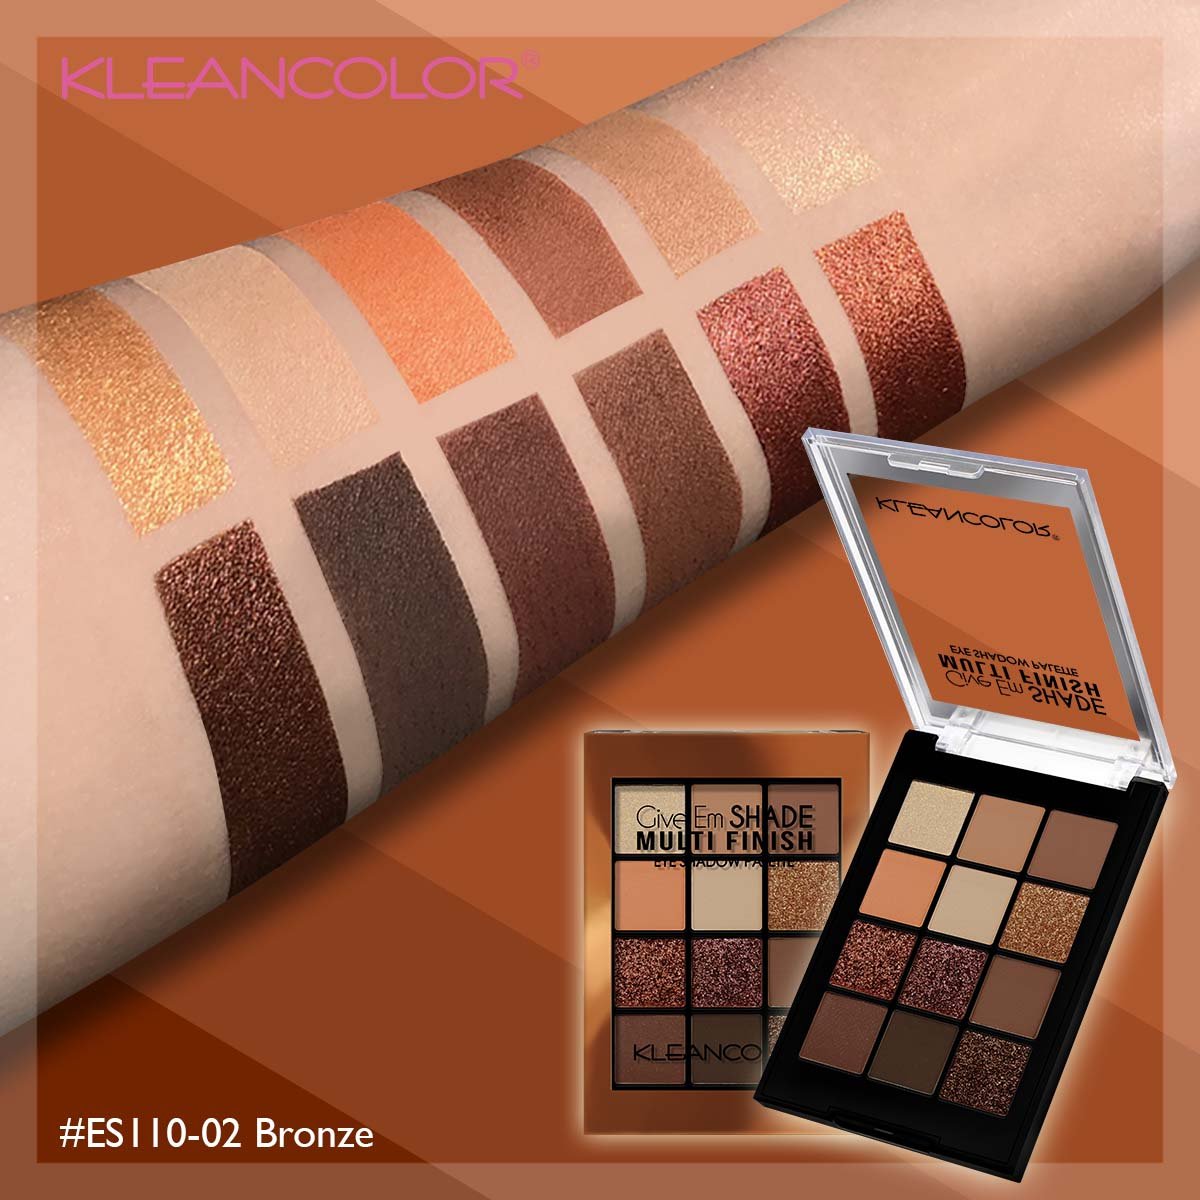 Kleancolor - Give Em Shade Palette Bronze